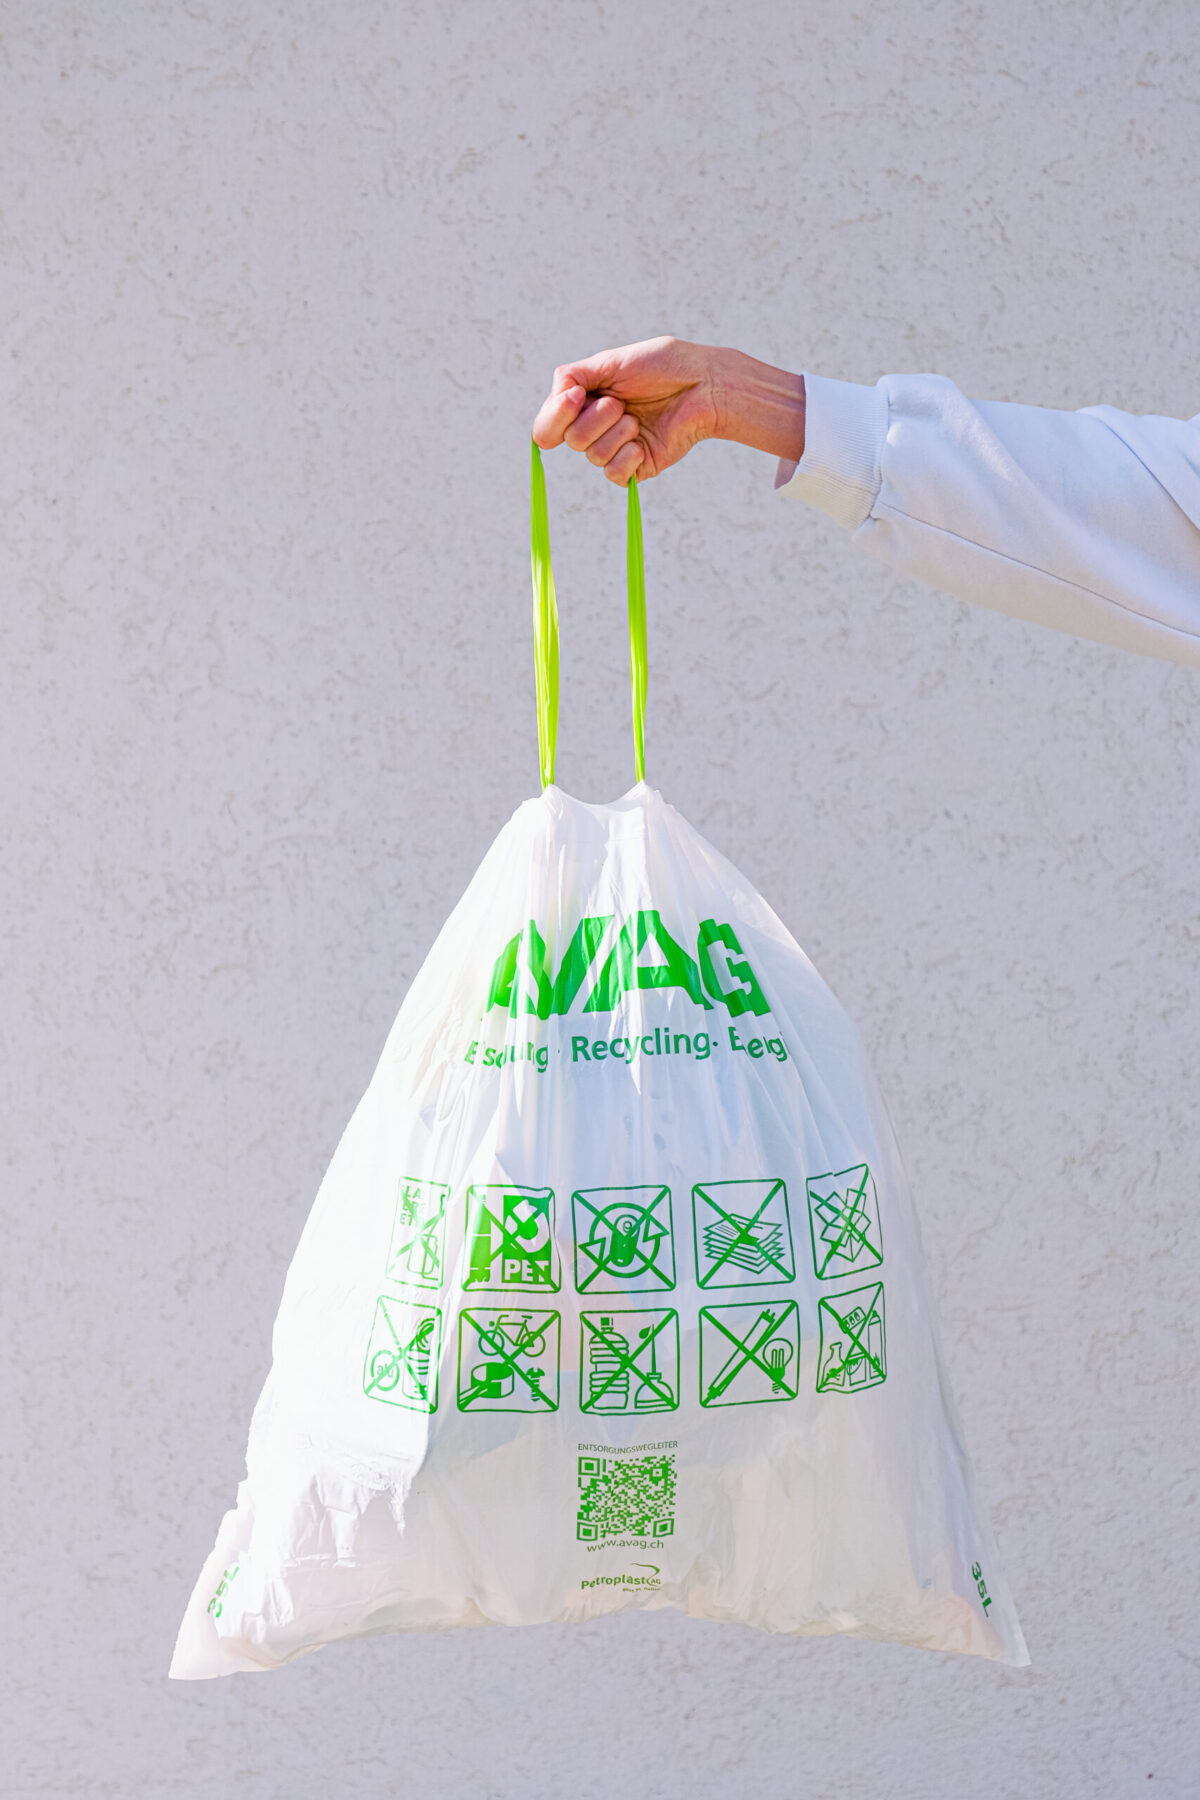 Μελέτη: Οι βιοδιασπώμενες σακούλες μεταφοράς είναι πιο τοξικές από τις συμβατικές πλαστικές